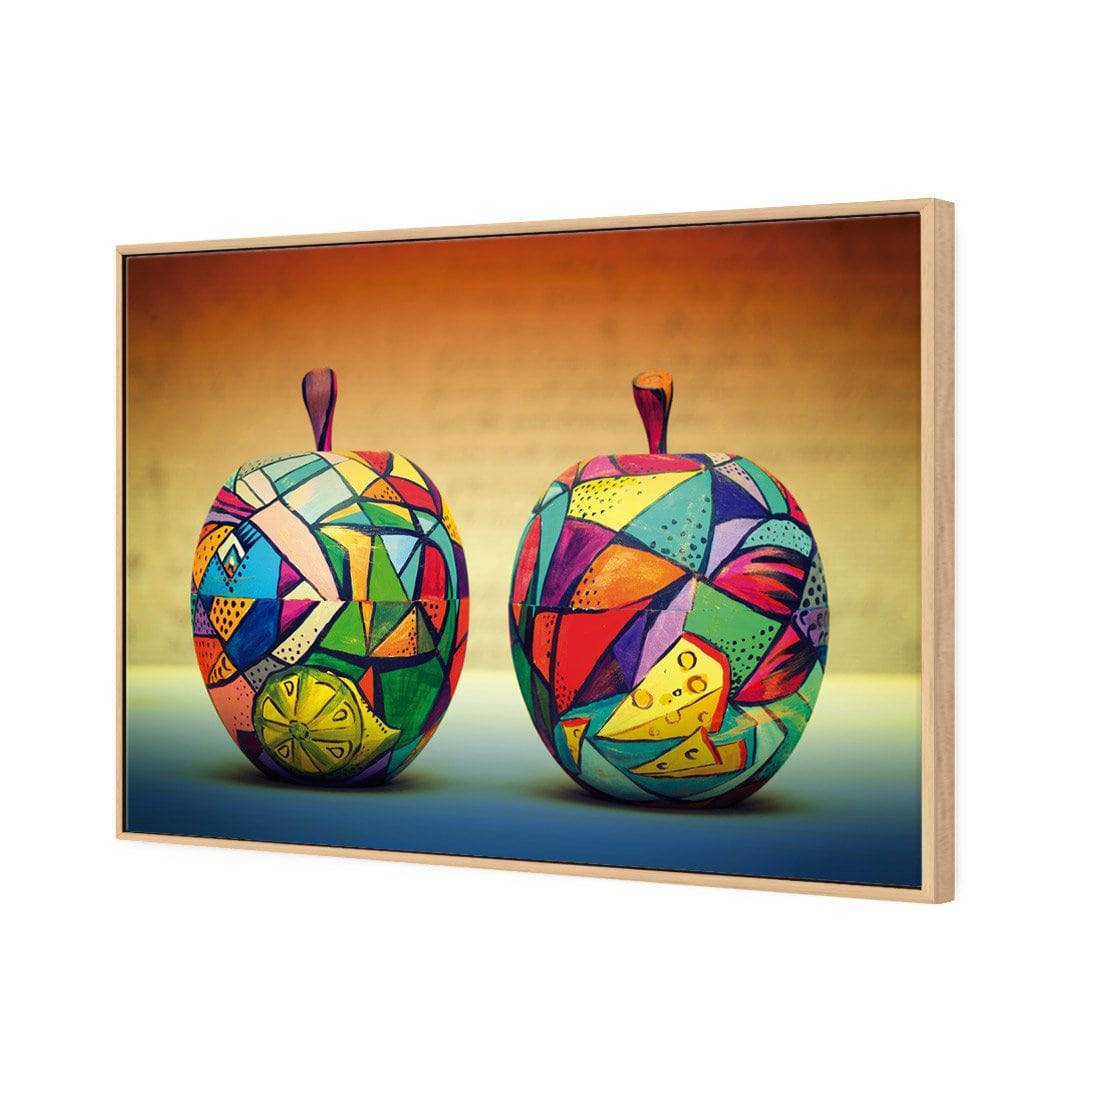 Forbidden Fruit Canvas Art-Canvas-Wall Art Designs-45x30cm-Canvas - Oak Frame-Wall Art Designs